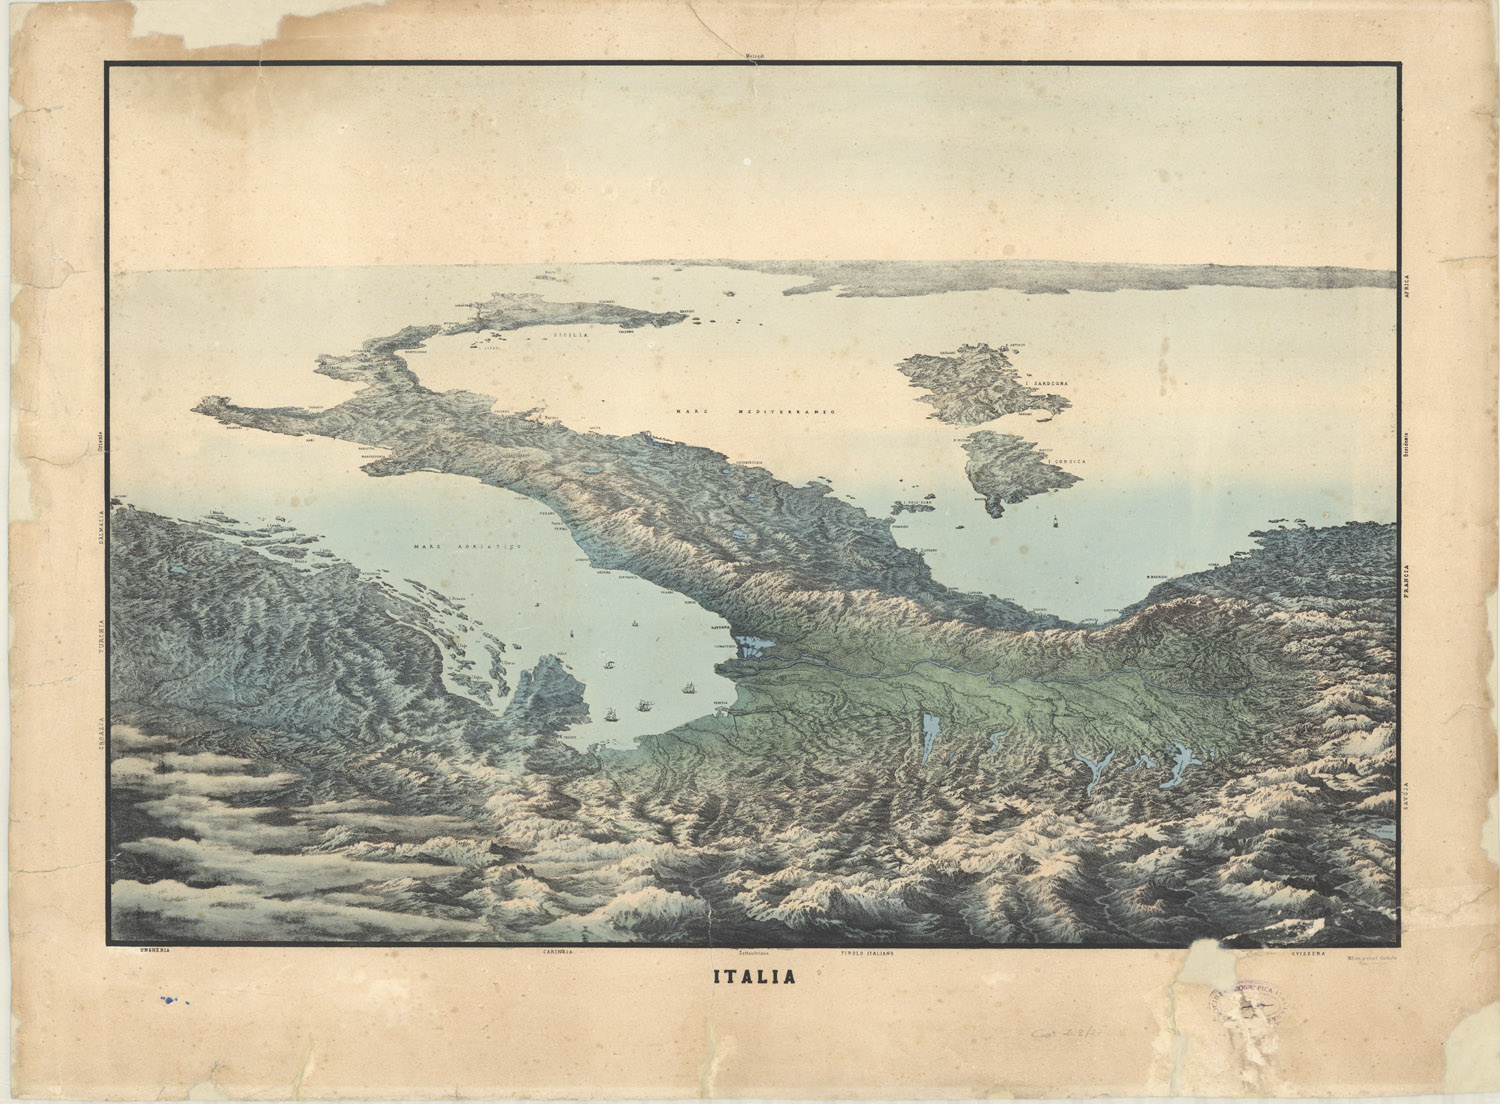 Venerdì Cartografico – Italia “Al contrario”, [1861]